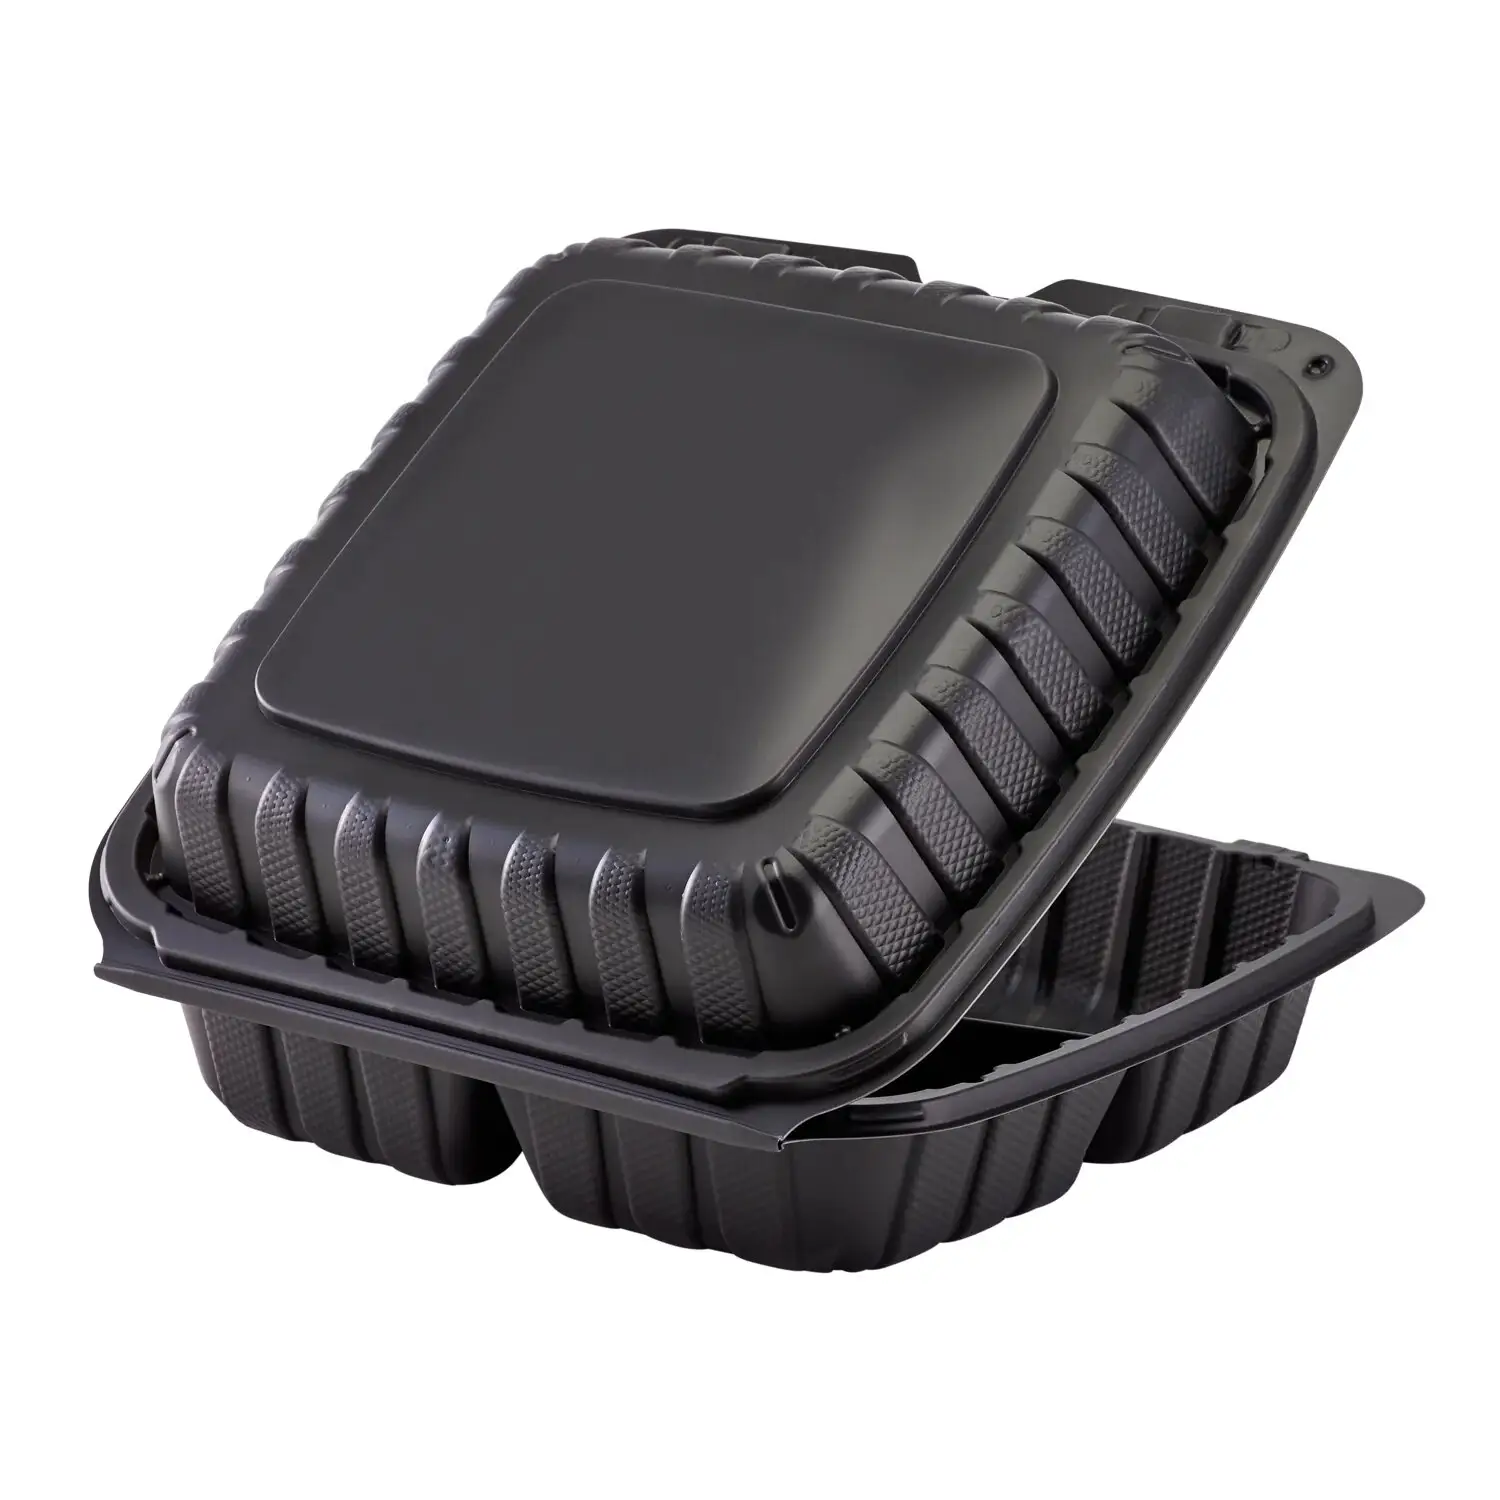 Yiyecek gitmek için konteynerler 9X9 restoran 3 bölüm gıda kapları için özelleştirilmiş İstistackable mikrodalgada plastik kare gıda saklama kabı